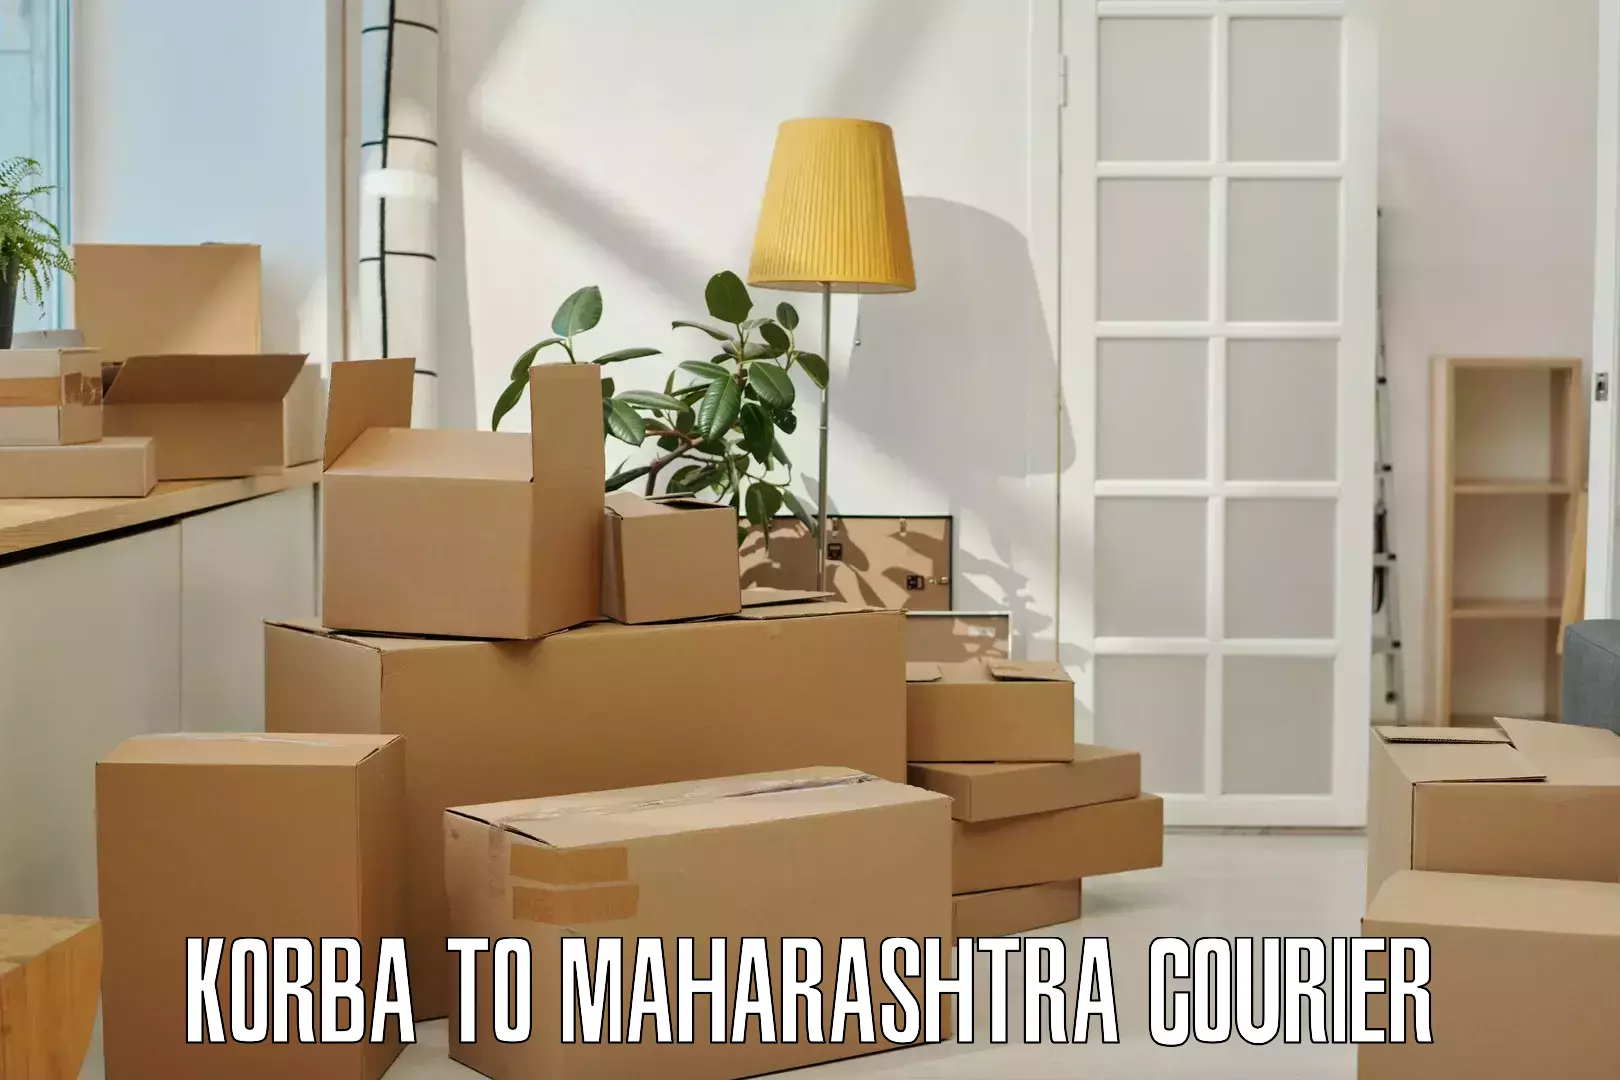 Residential courier service Korba to Maharashtra